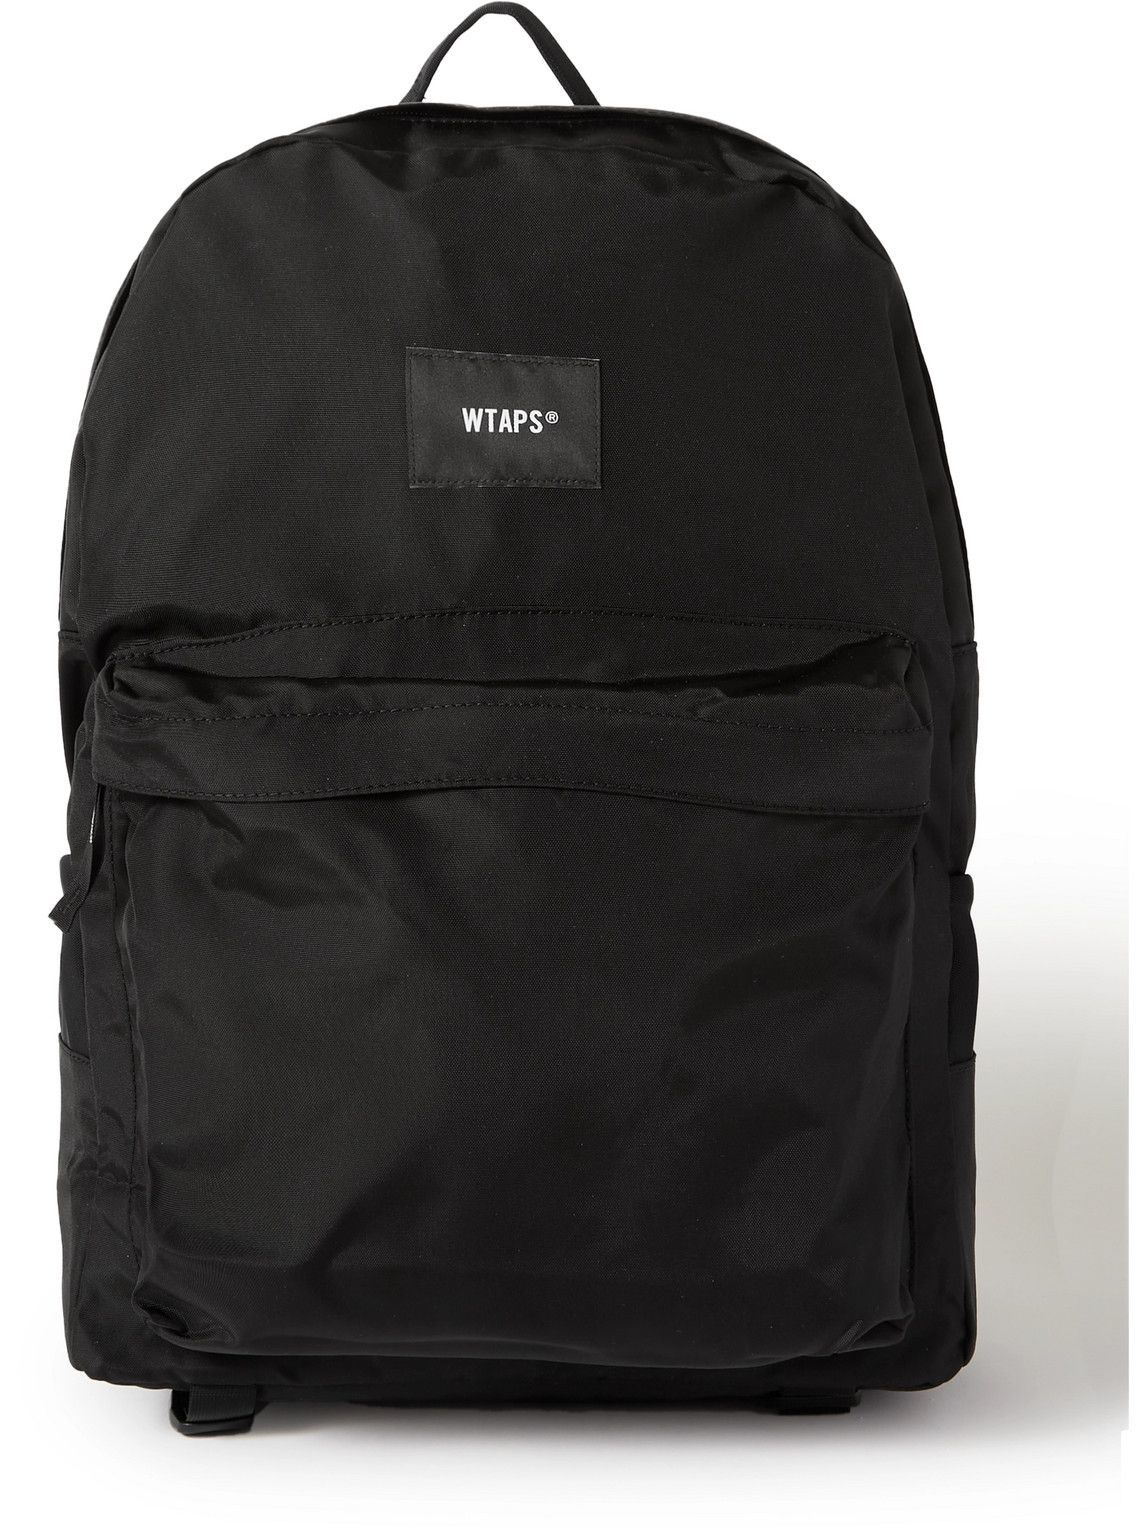 WTAPS backpack BLACK 新品